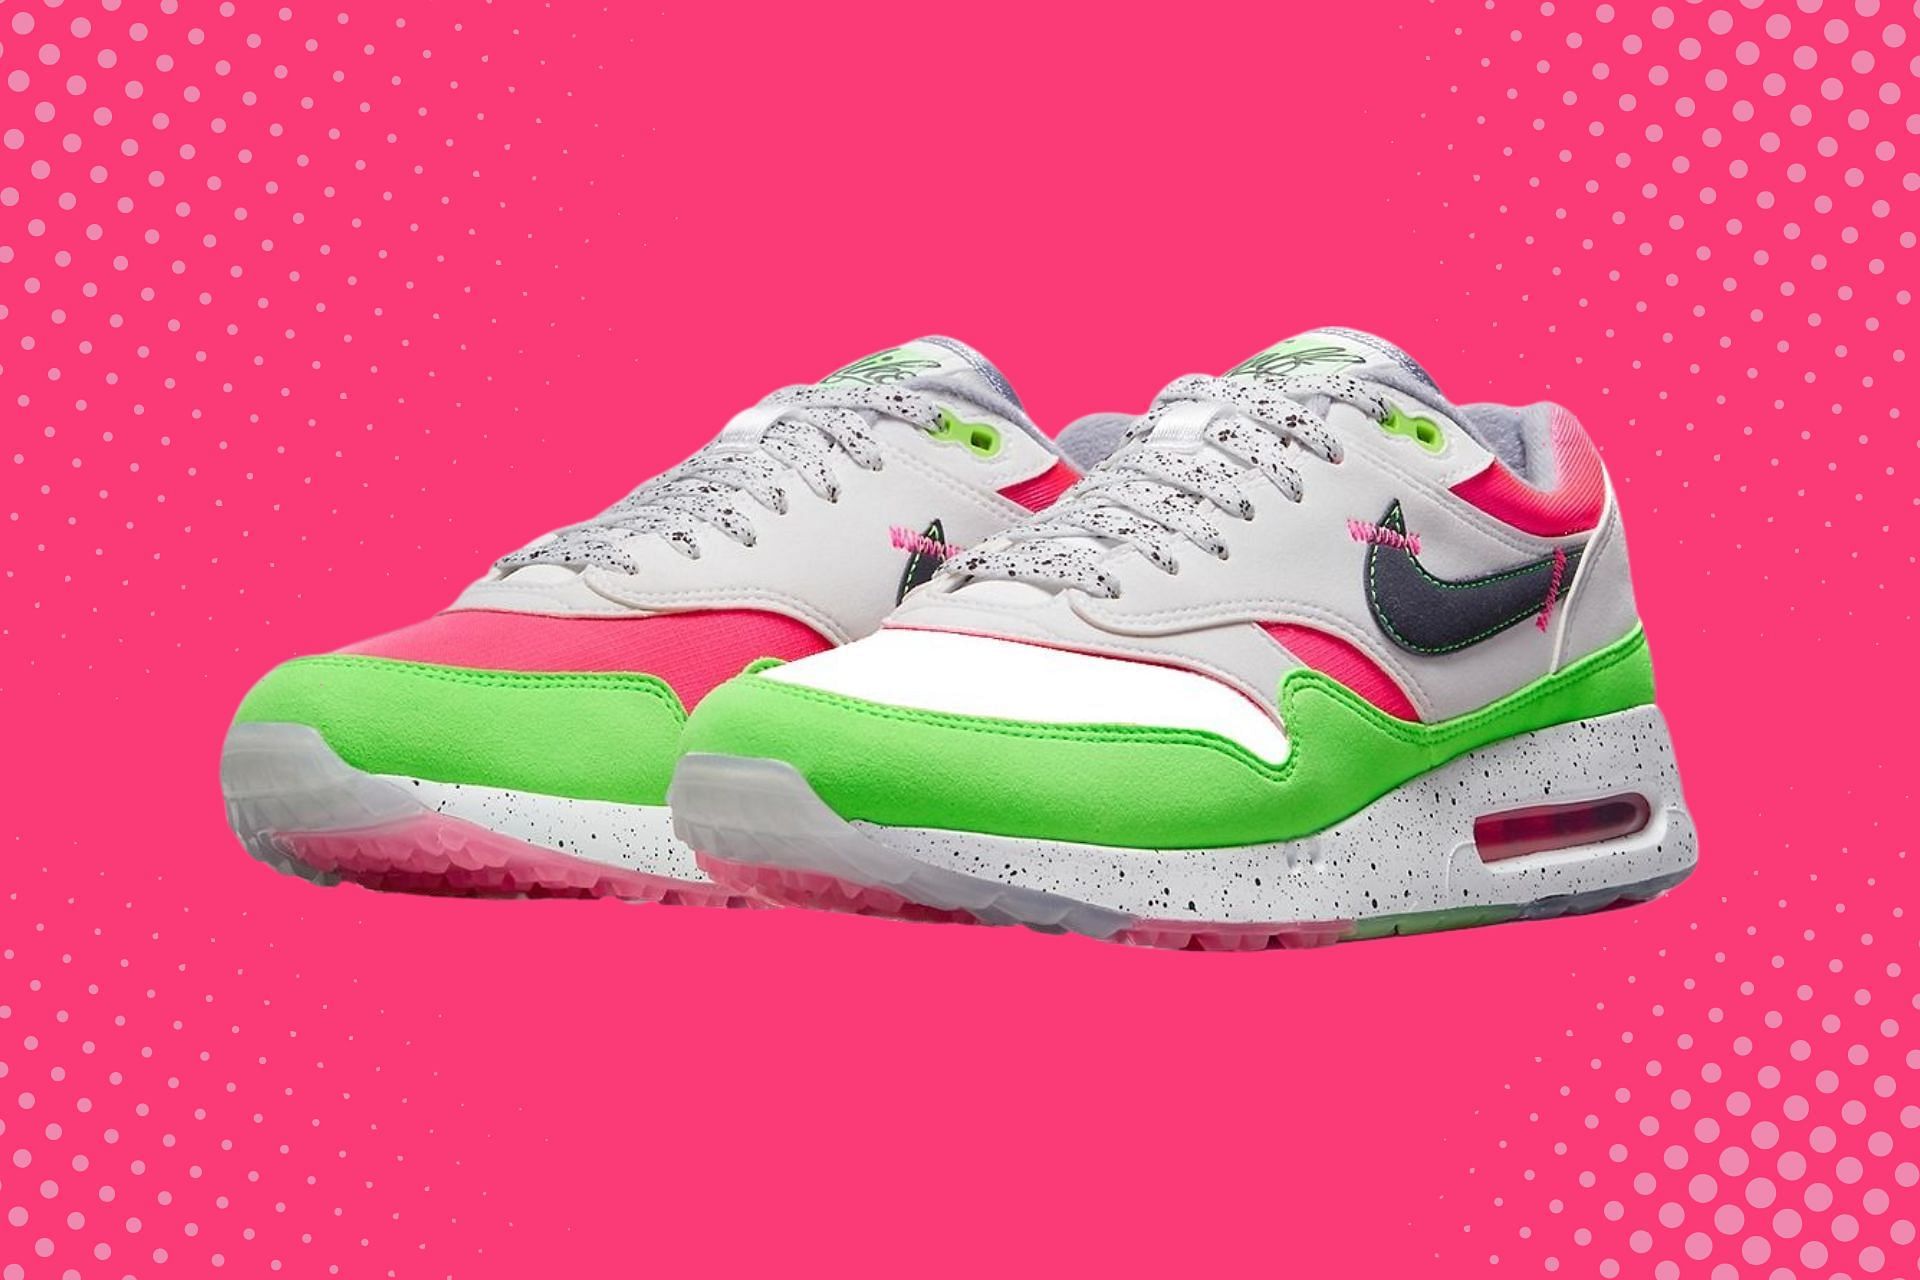 Watermelon: Nike Air Max 1 '86 OG Golf “Watermelon” shoes: Where